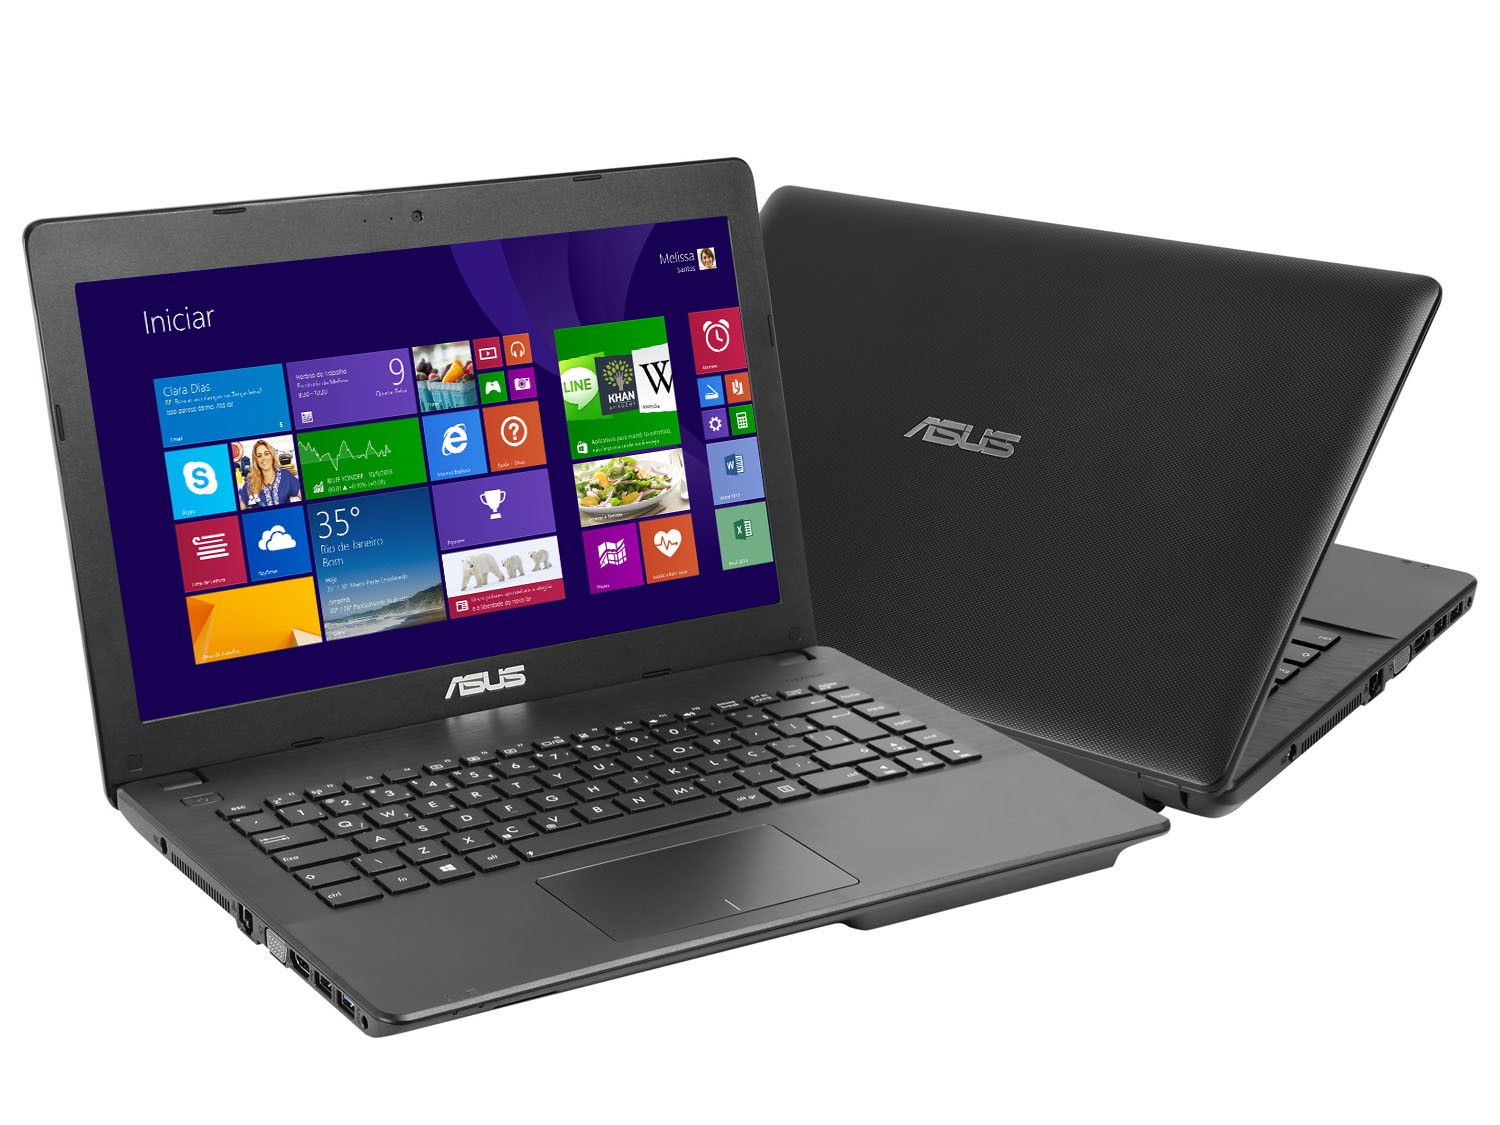 Laptop giá rẻ 2014 dưới 7 triệu Asus X453MA nổi bật với mặt trên phía ngoài làm bằng chất liệu nhôm phai xước